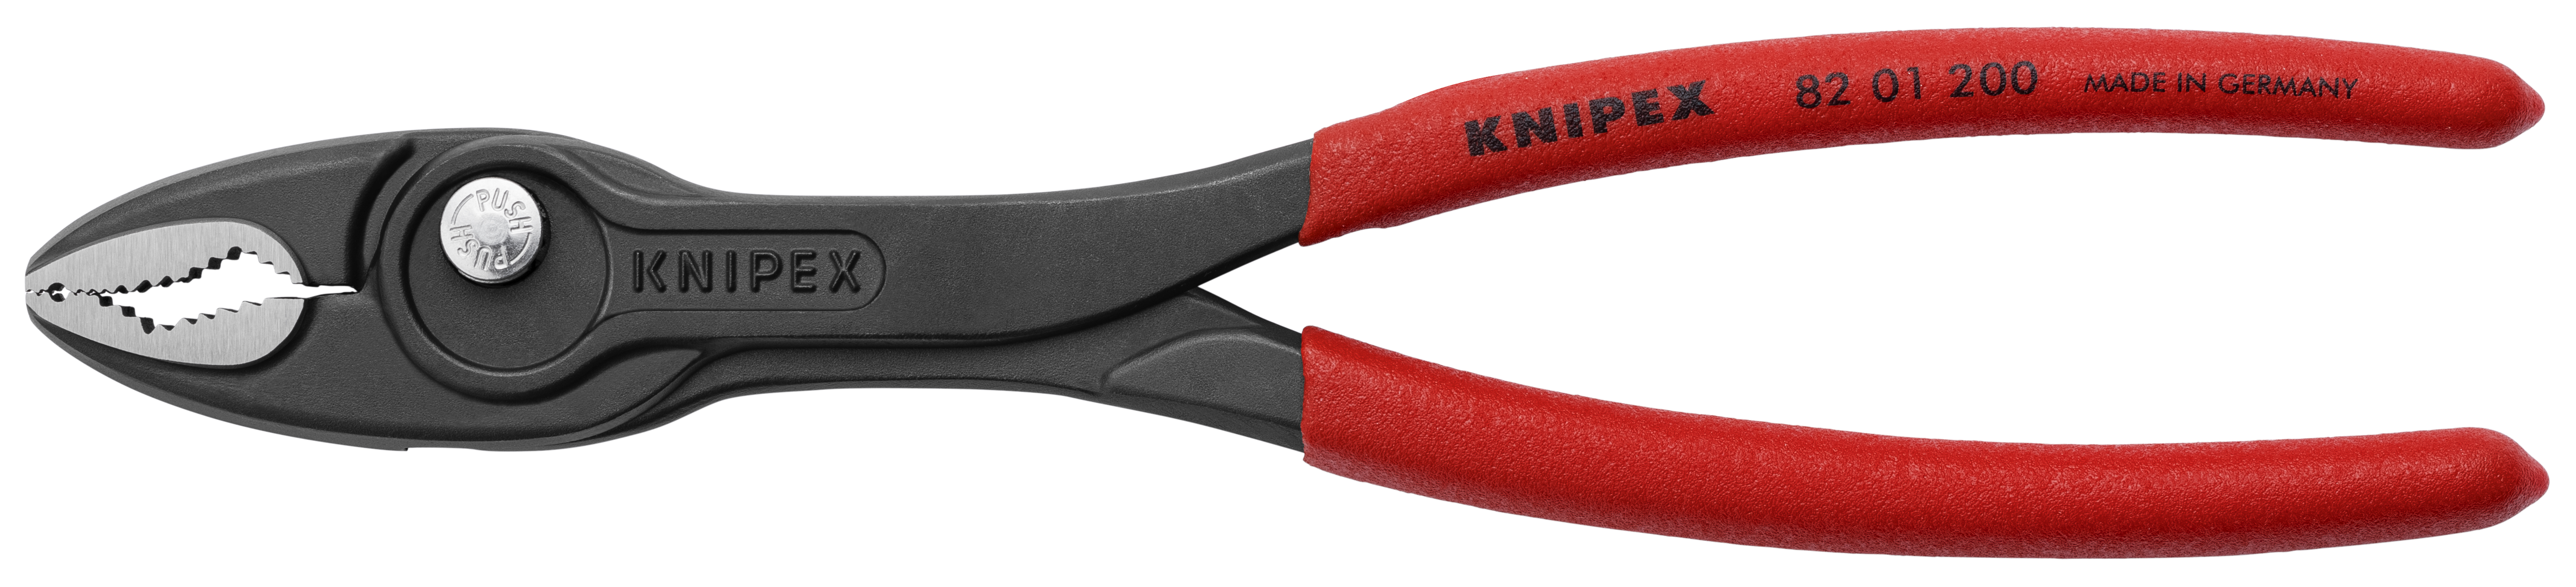 KNIPEX TwinGrip Frontgreifzange mit rutschhemmendem Kunststoff überzogen schwarz atramentiert 200 mm